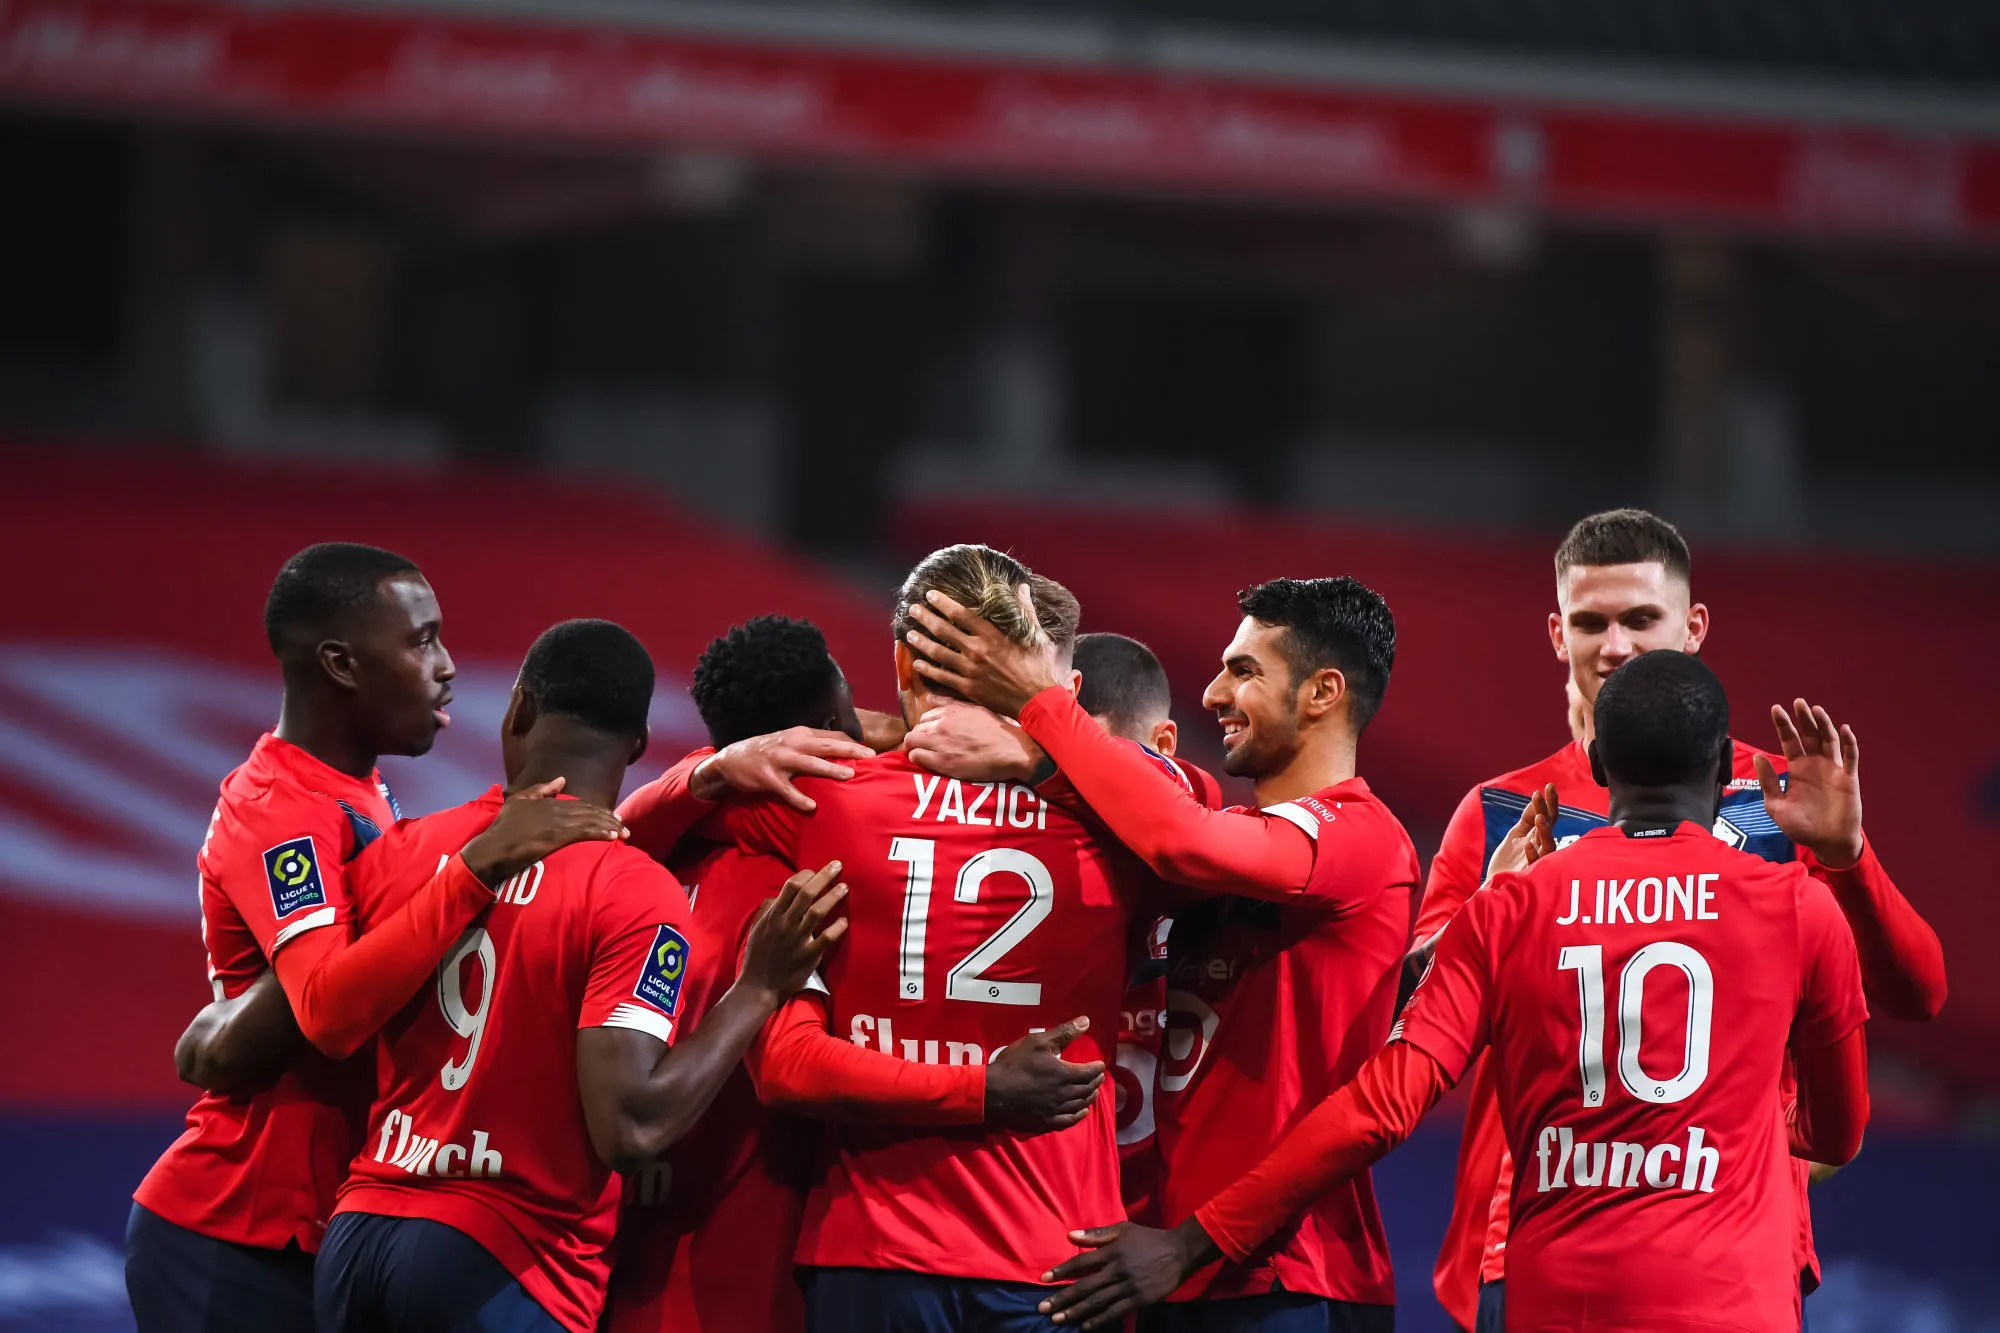 Pronostic Nantes Lille : Analyse, cotes et prono du match de Ligue 1